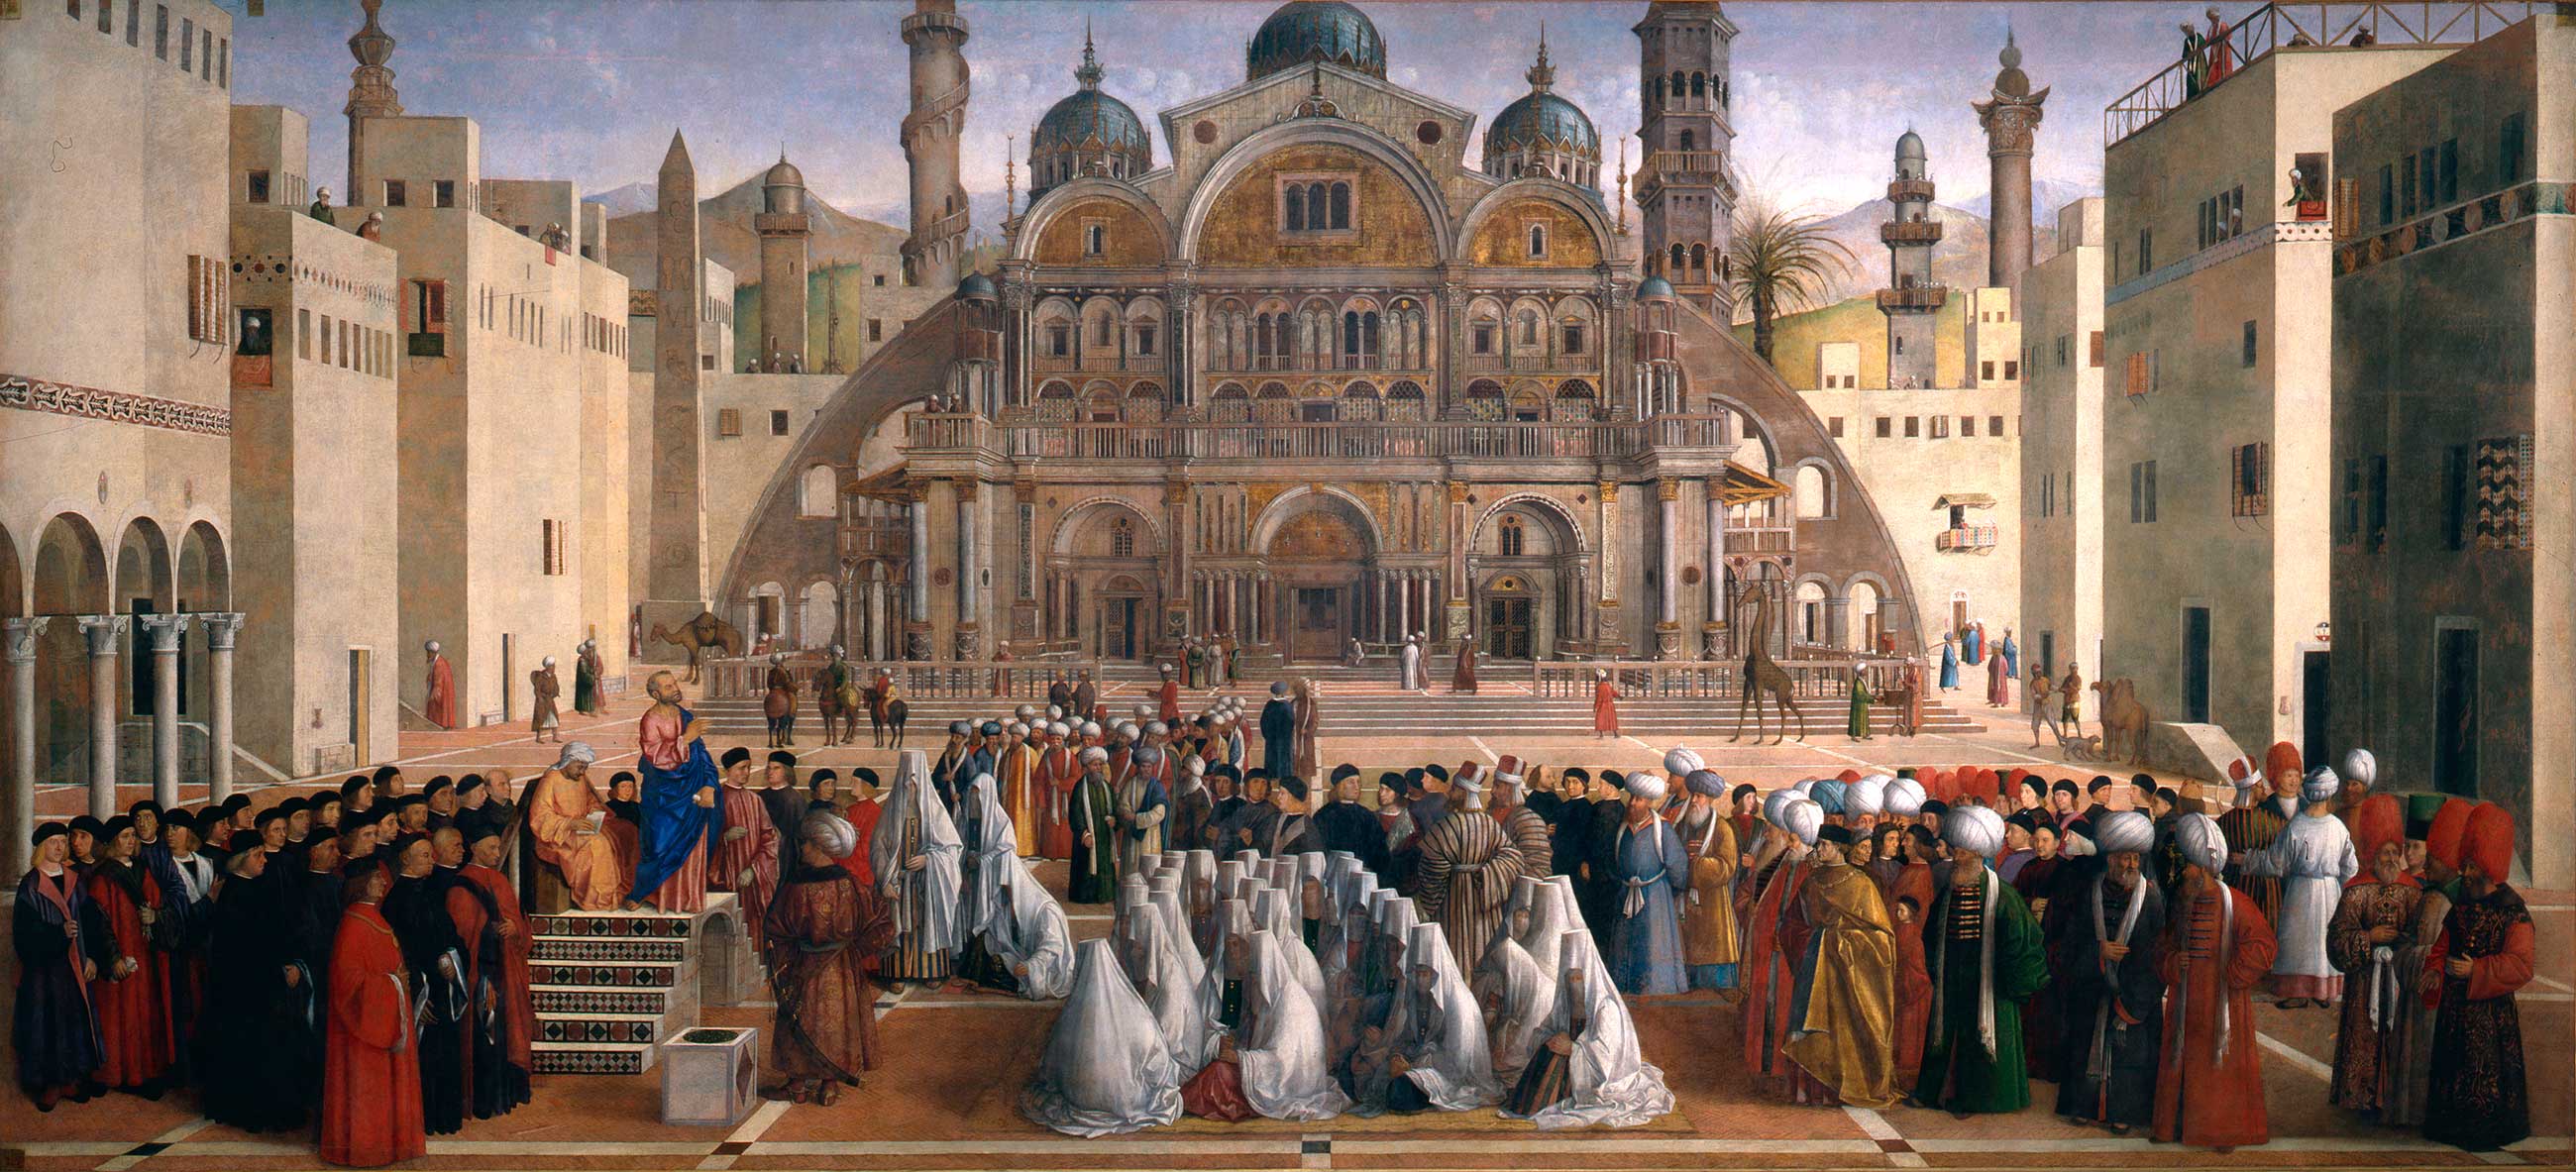 Markus predigt in Alexandria by Gentile Bellini & Giovanni Bellini - 1504-07 - 347 × 770 cm Pinacoteca di Brera